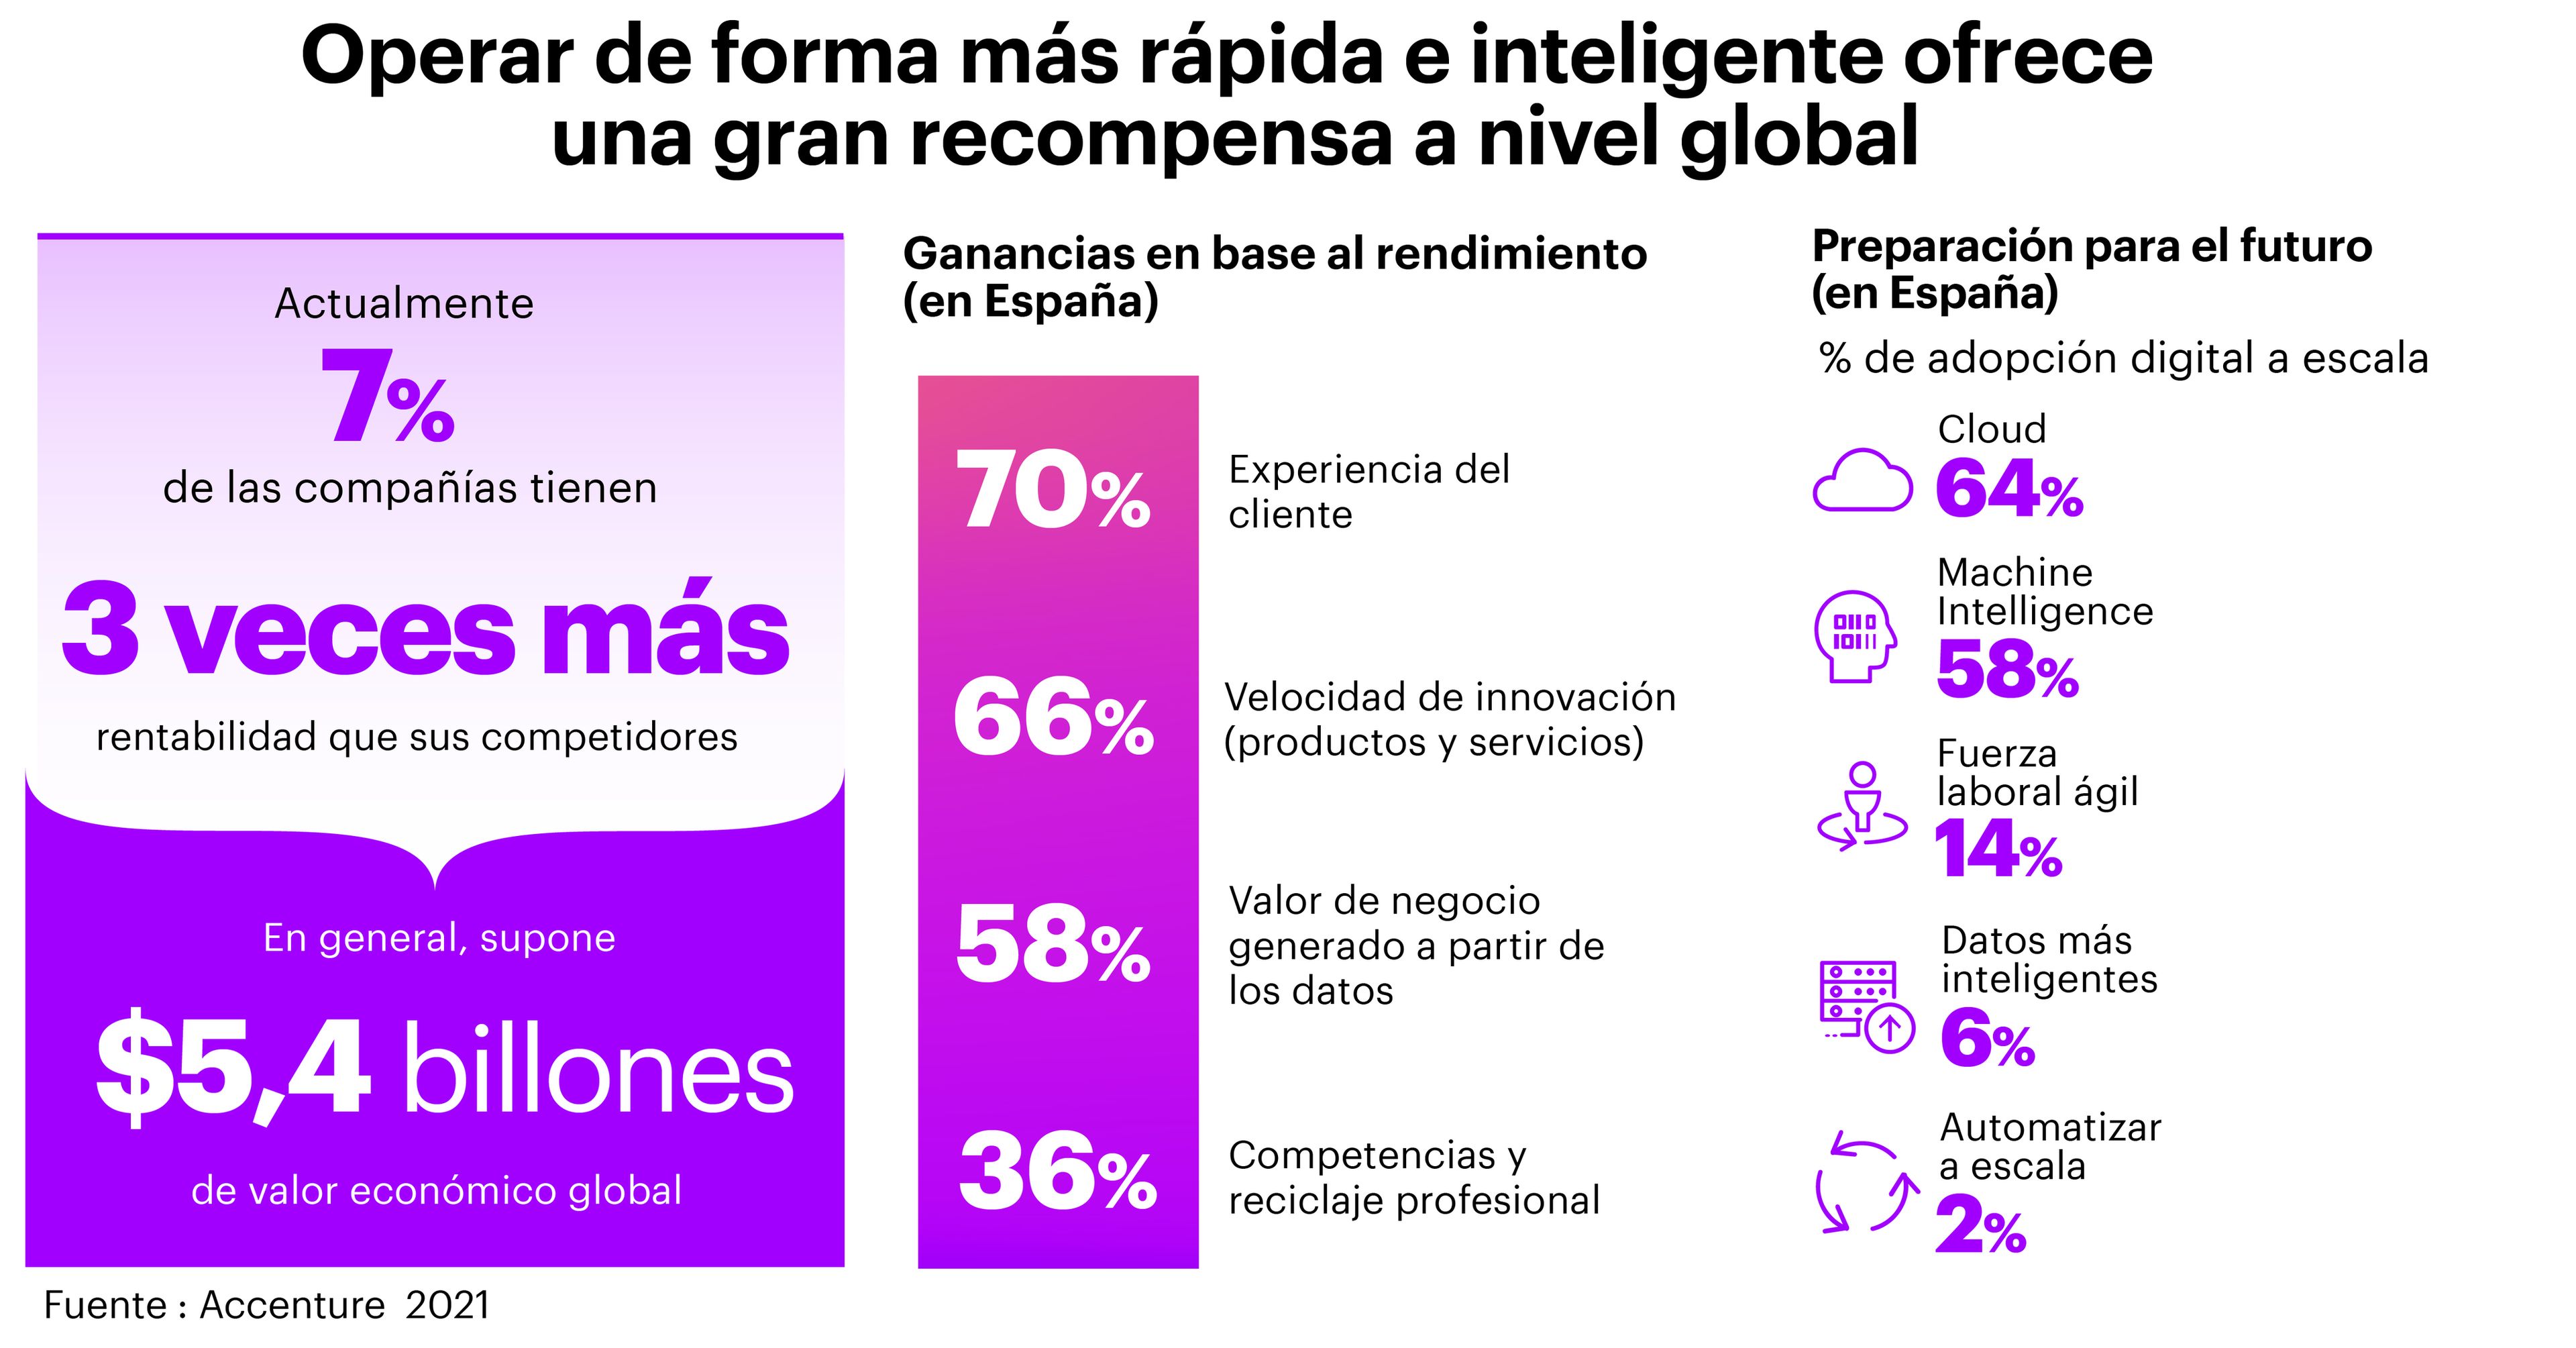 Tan solo el 2% de las empresas españolas están preparadas para el futuro.